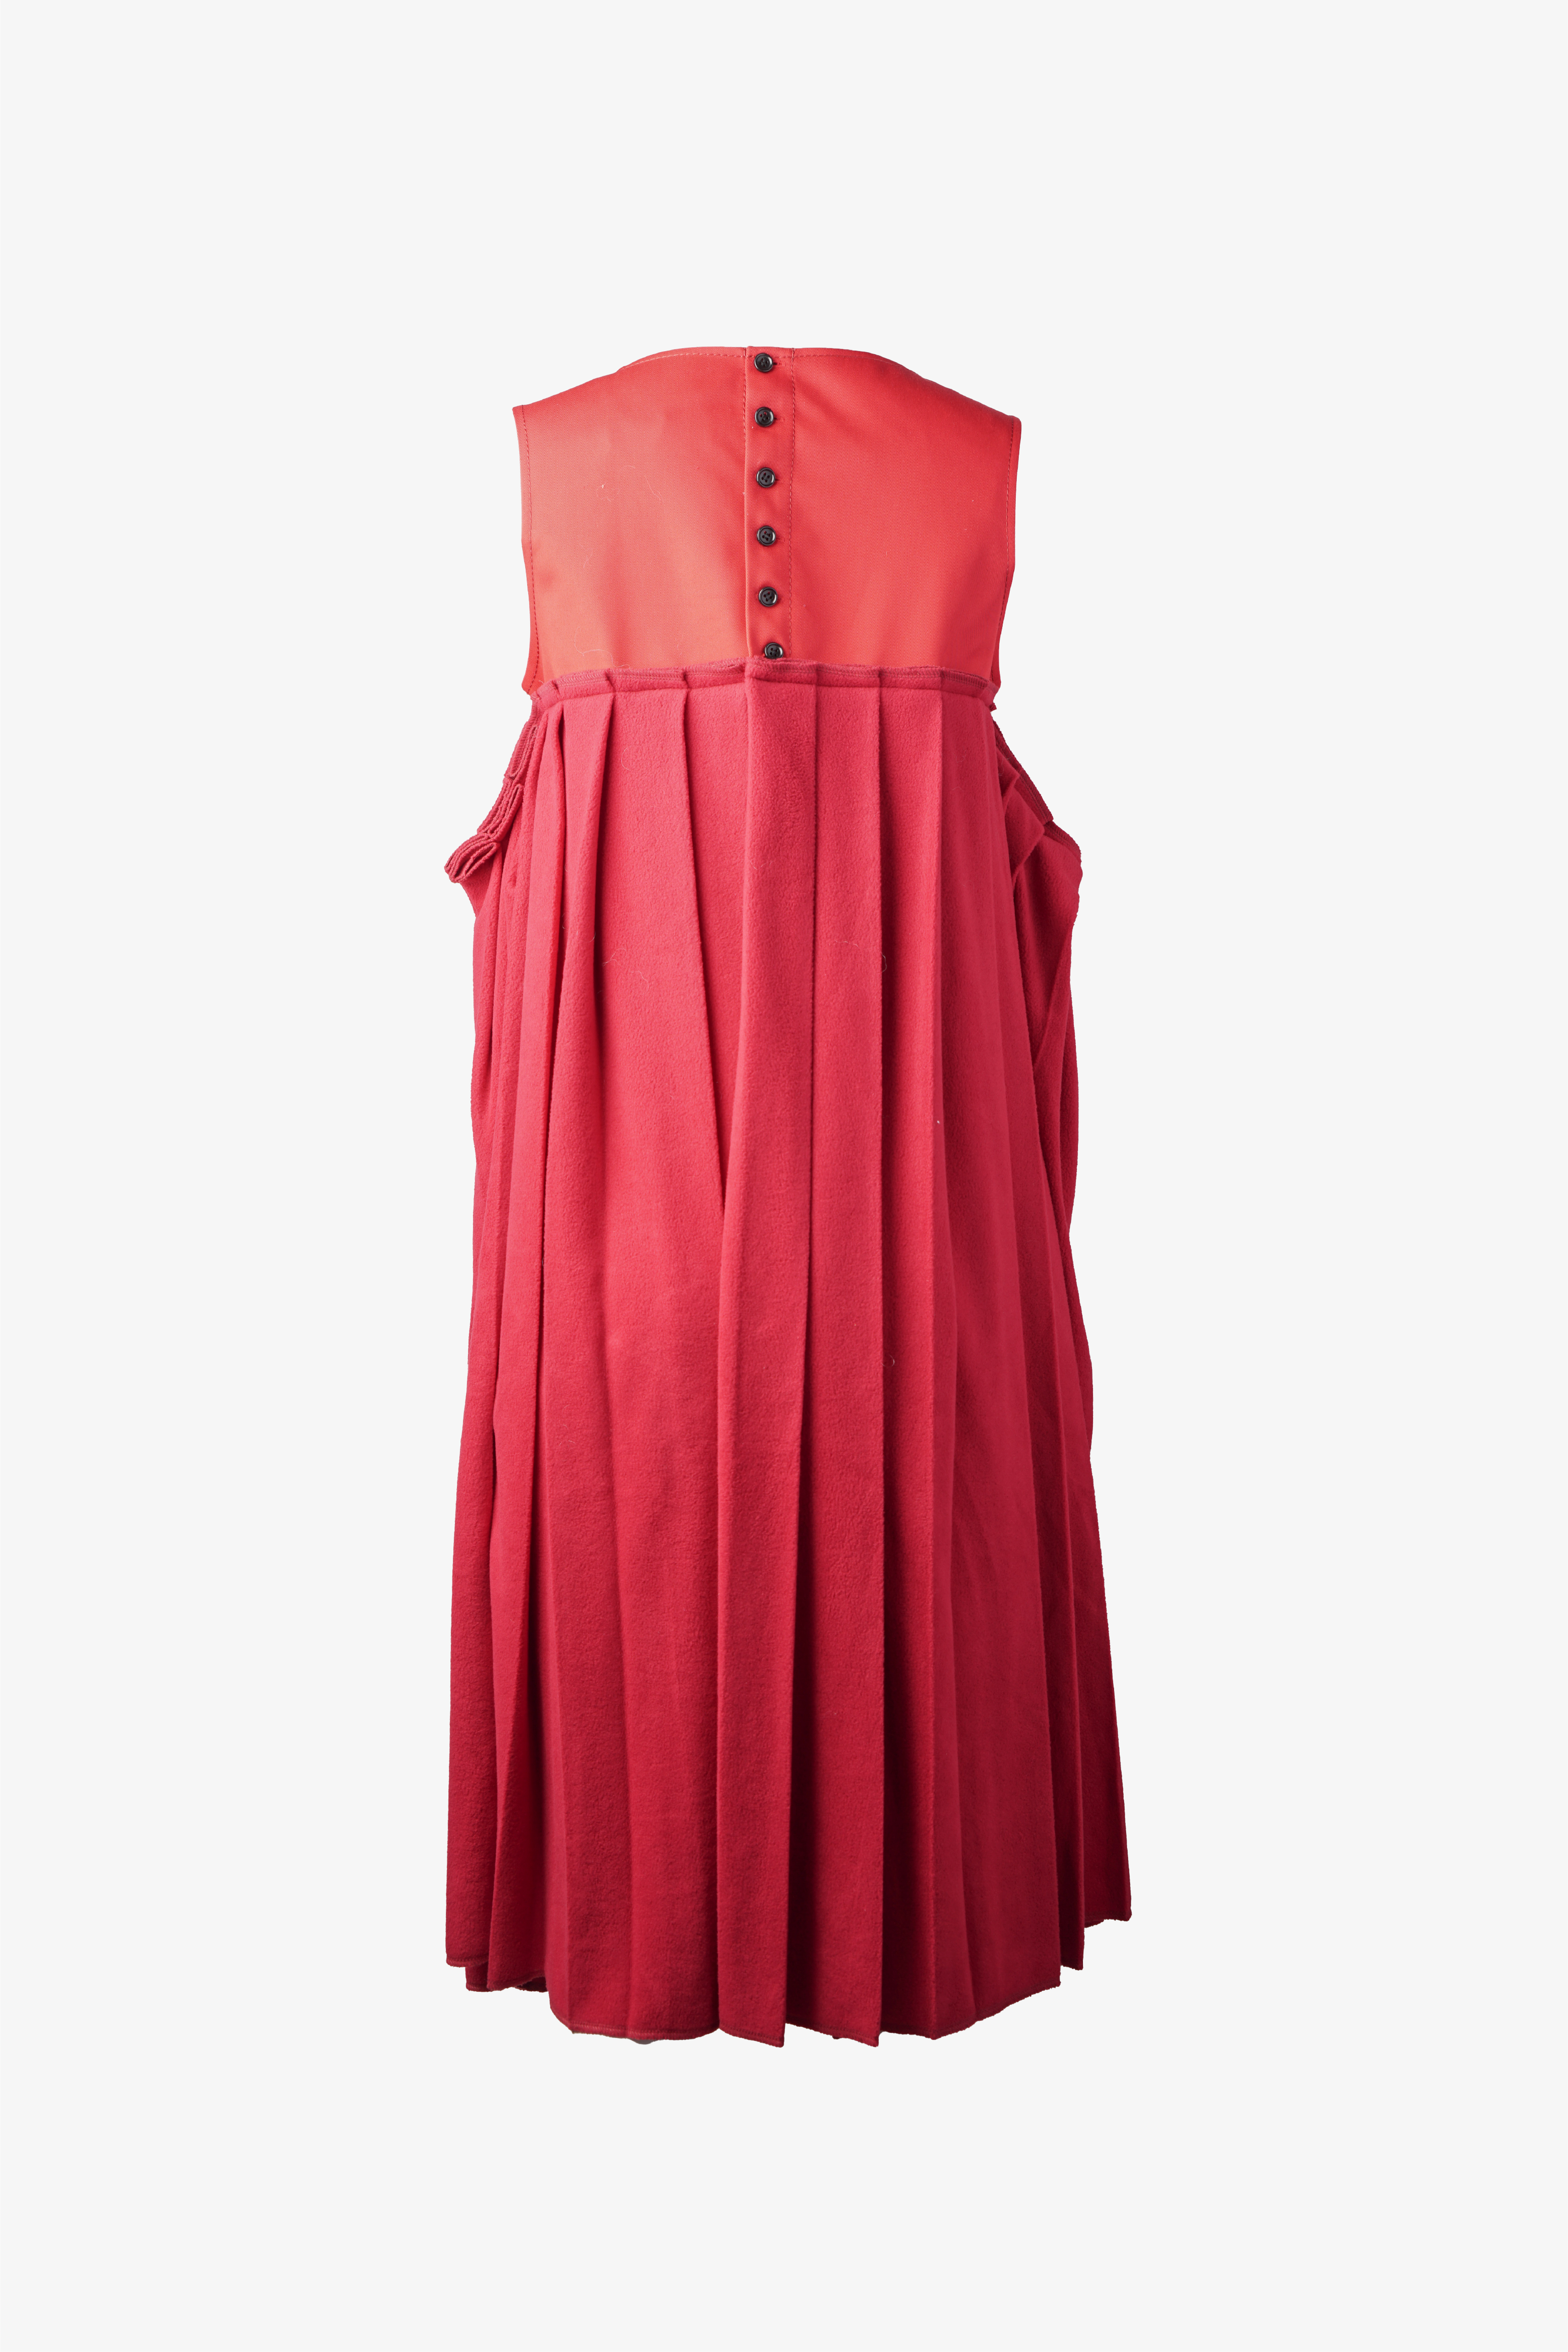 Selectshop FRAME - COMME DES GARÇONS TRICOT Dress Outerwear Dubai